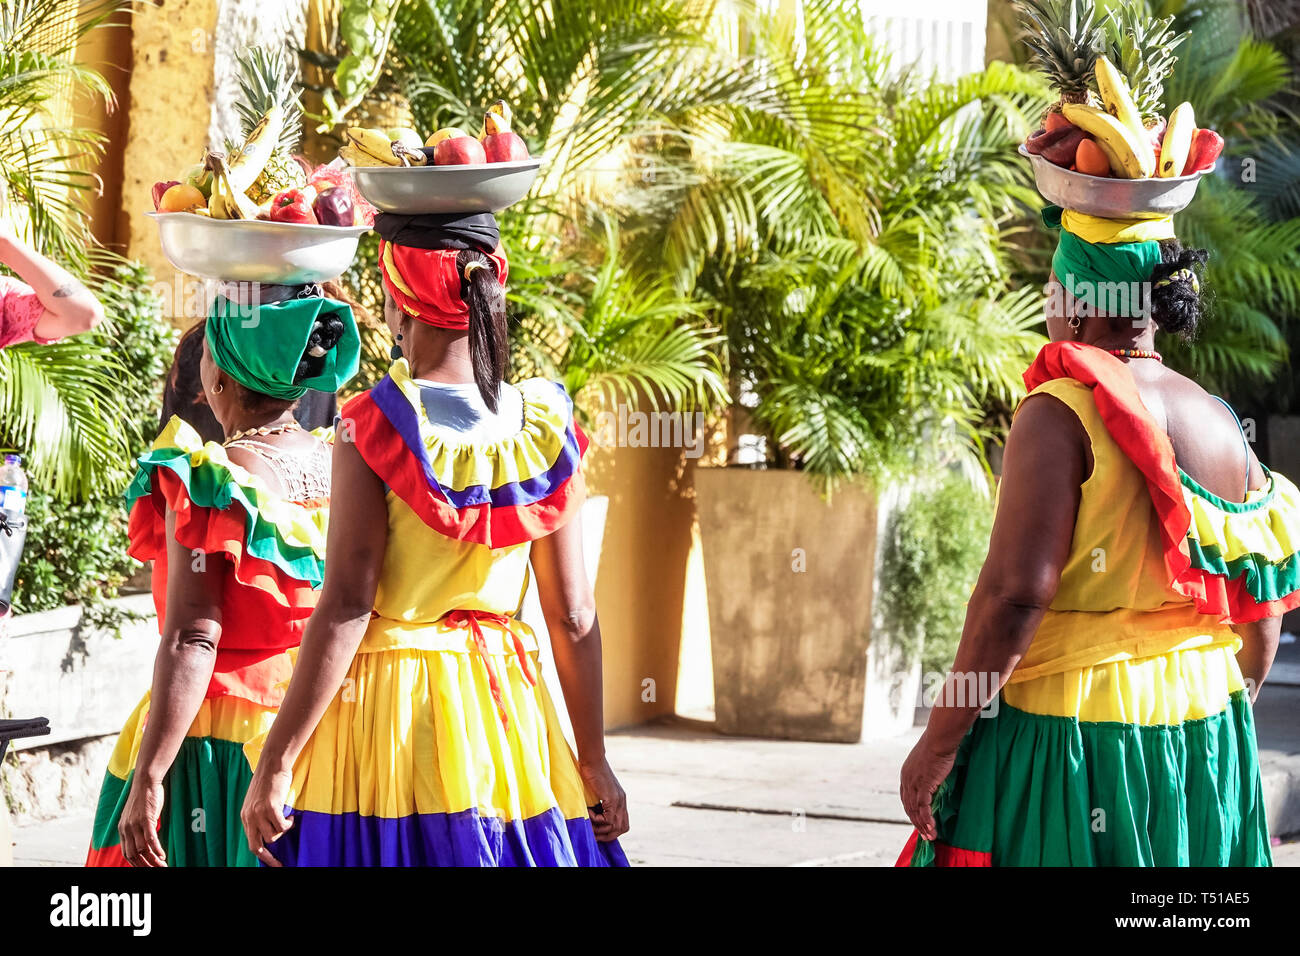 Cartagena Colombie,Afro Caribbean Palenquera,femme femme femme,fournisseur de fruits,costume traditionnel,porte-bol sur la tête,symboles culturels,COL190123111 Banque D'Images